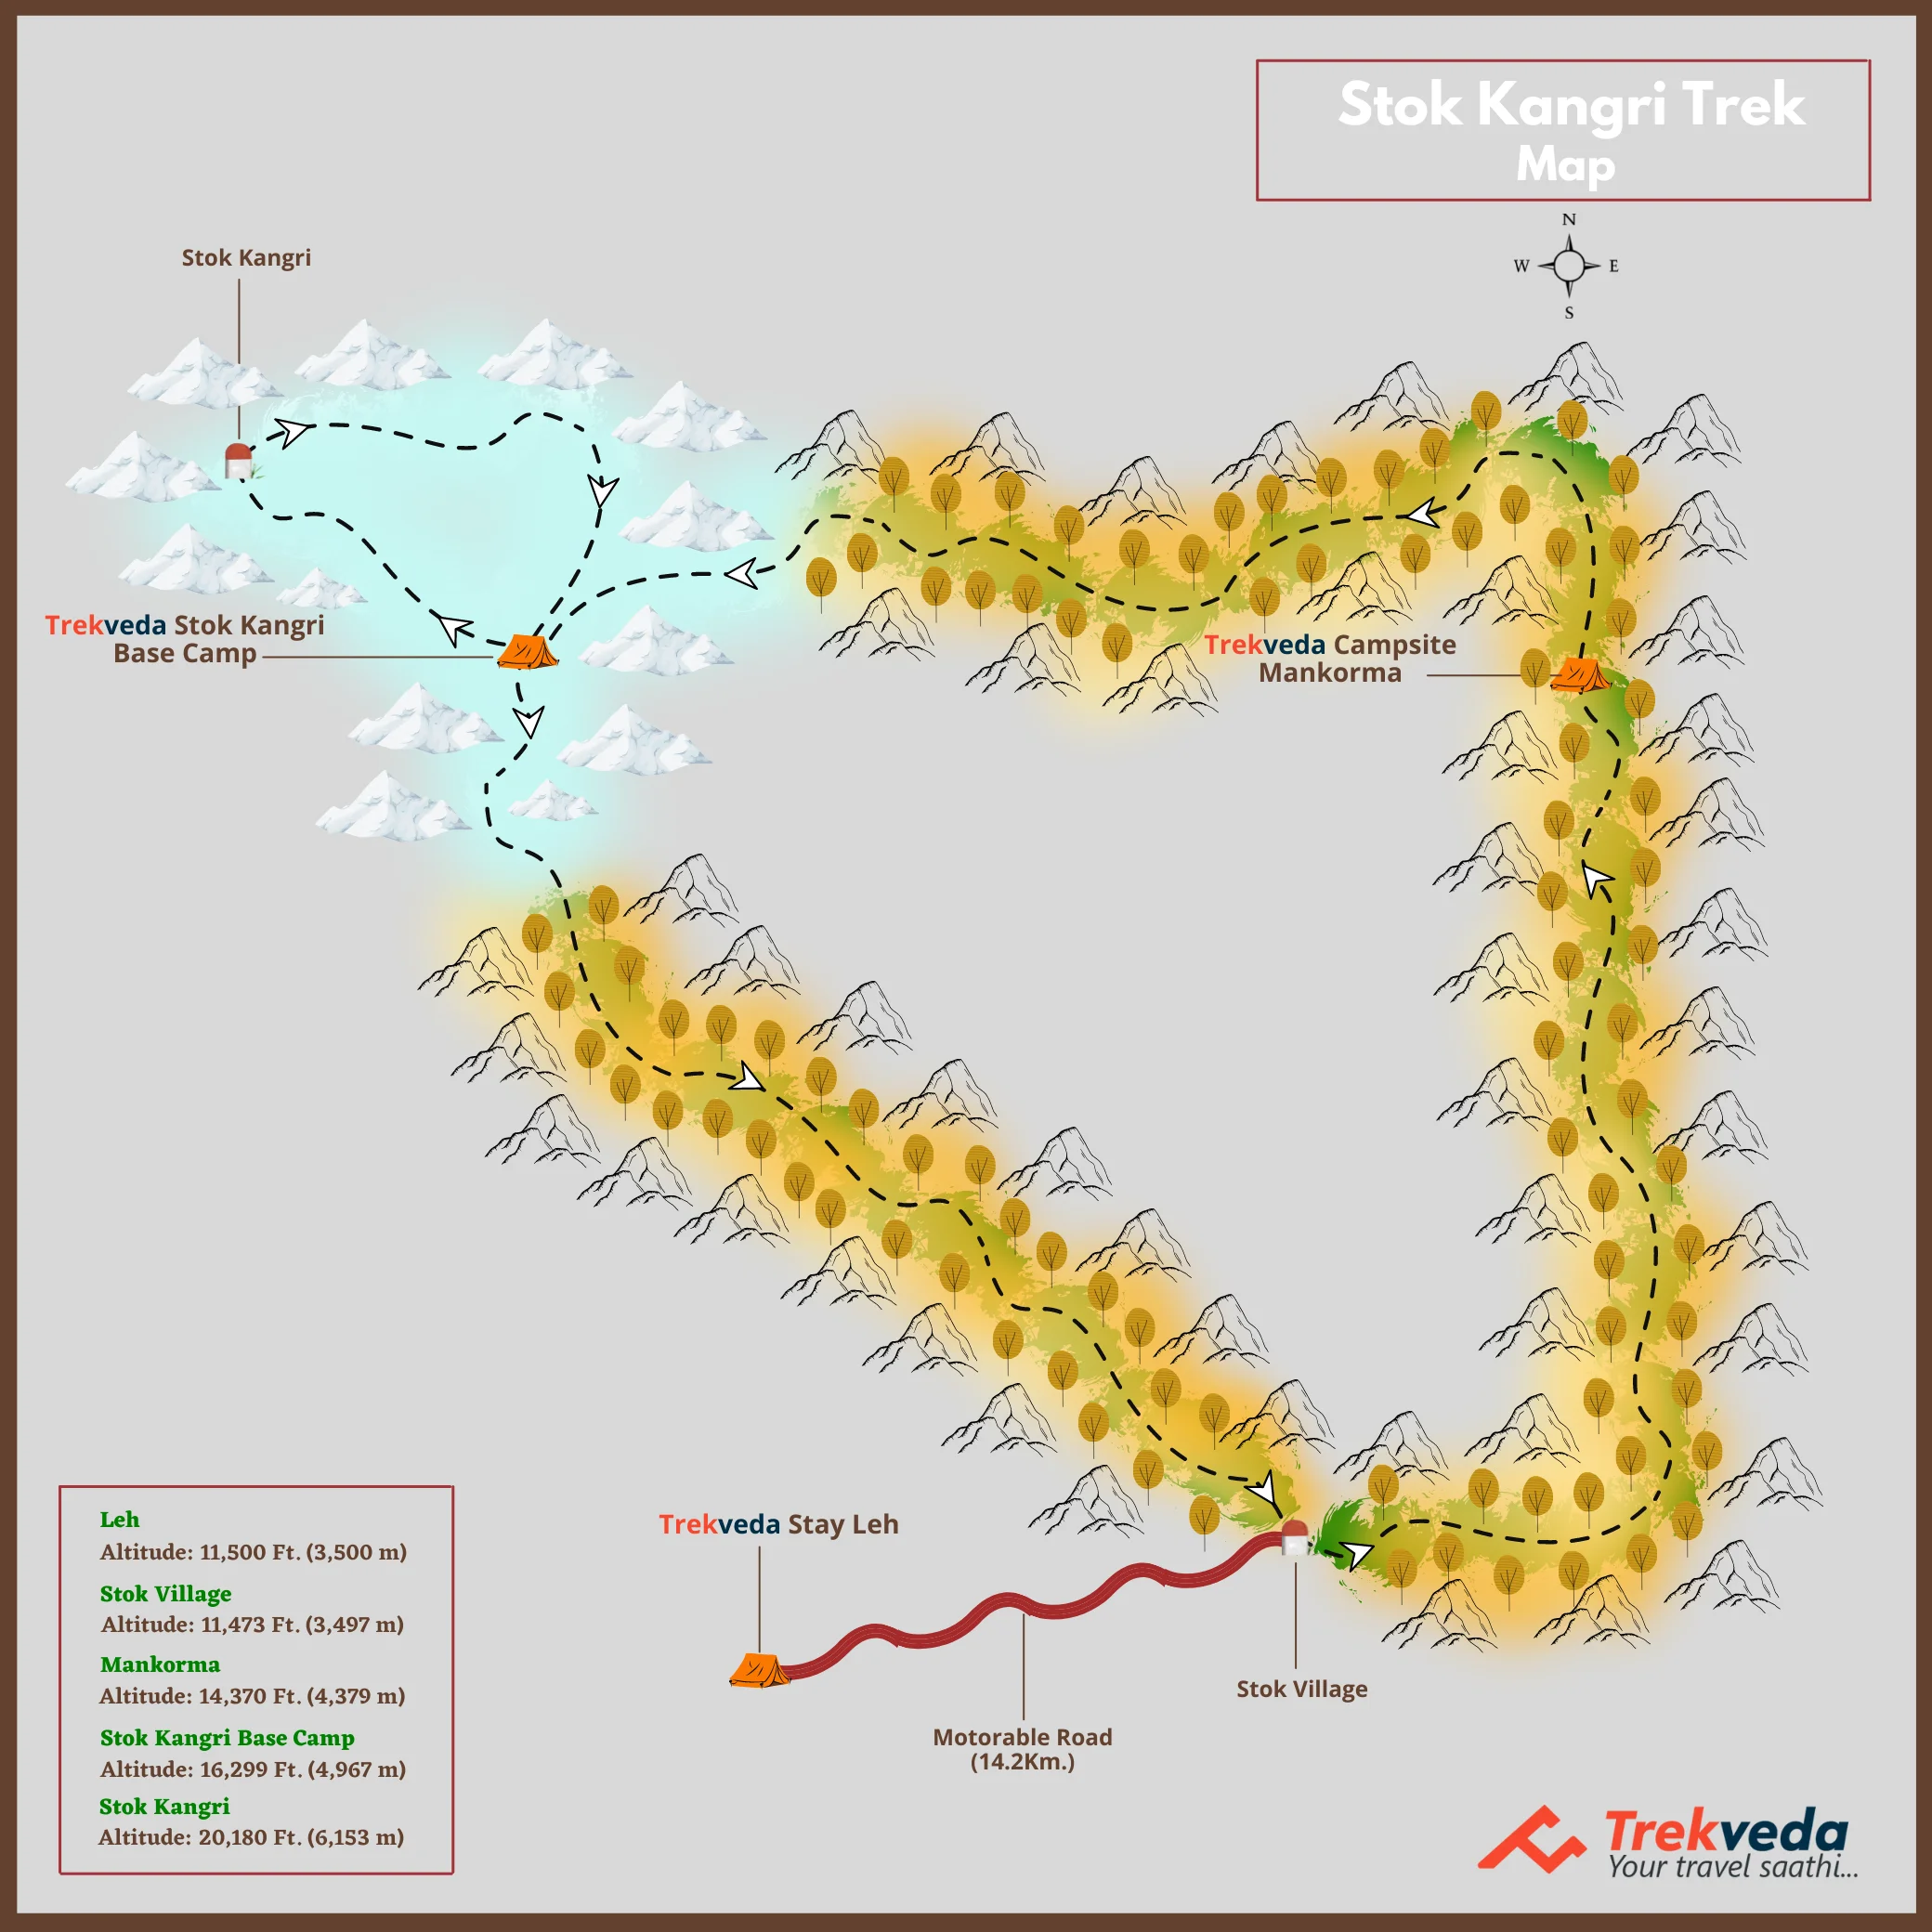 Stok Kangri Trek Map